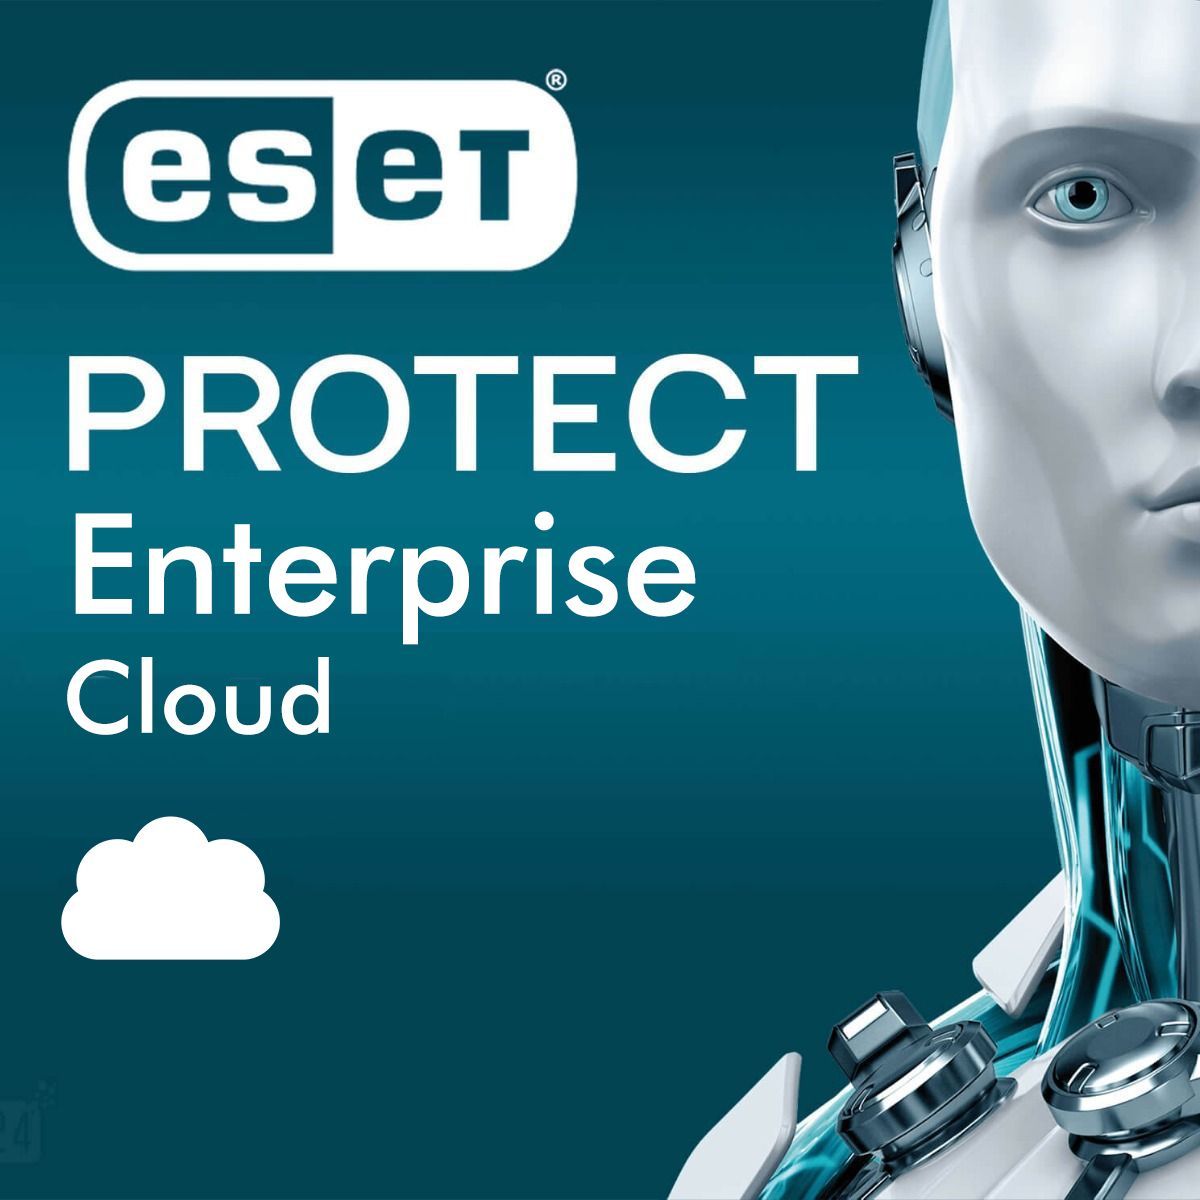 ESET Protect Enterprise Cloud (Academic/ Non-Profit/ Gov) 1-Year Subscription License